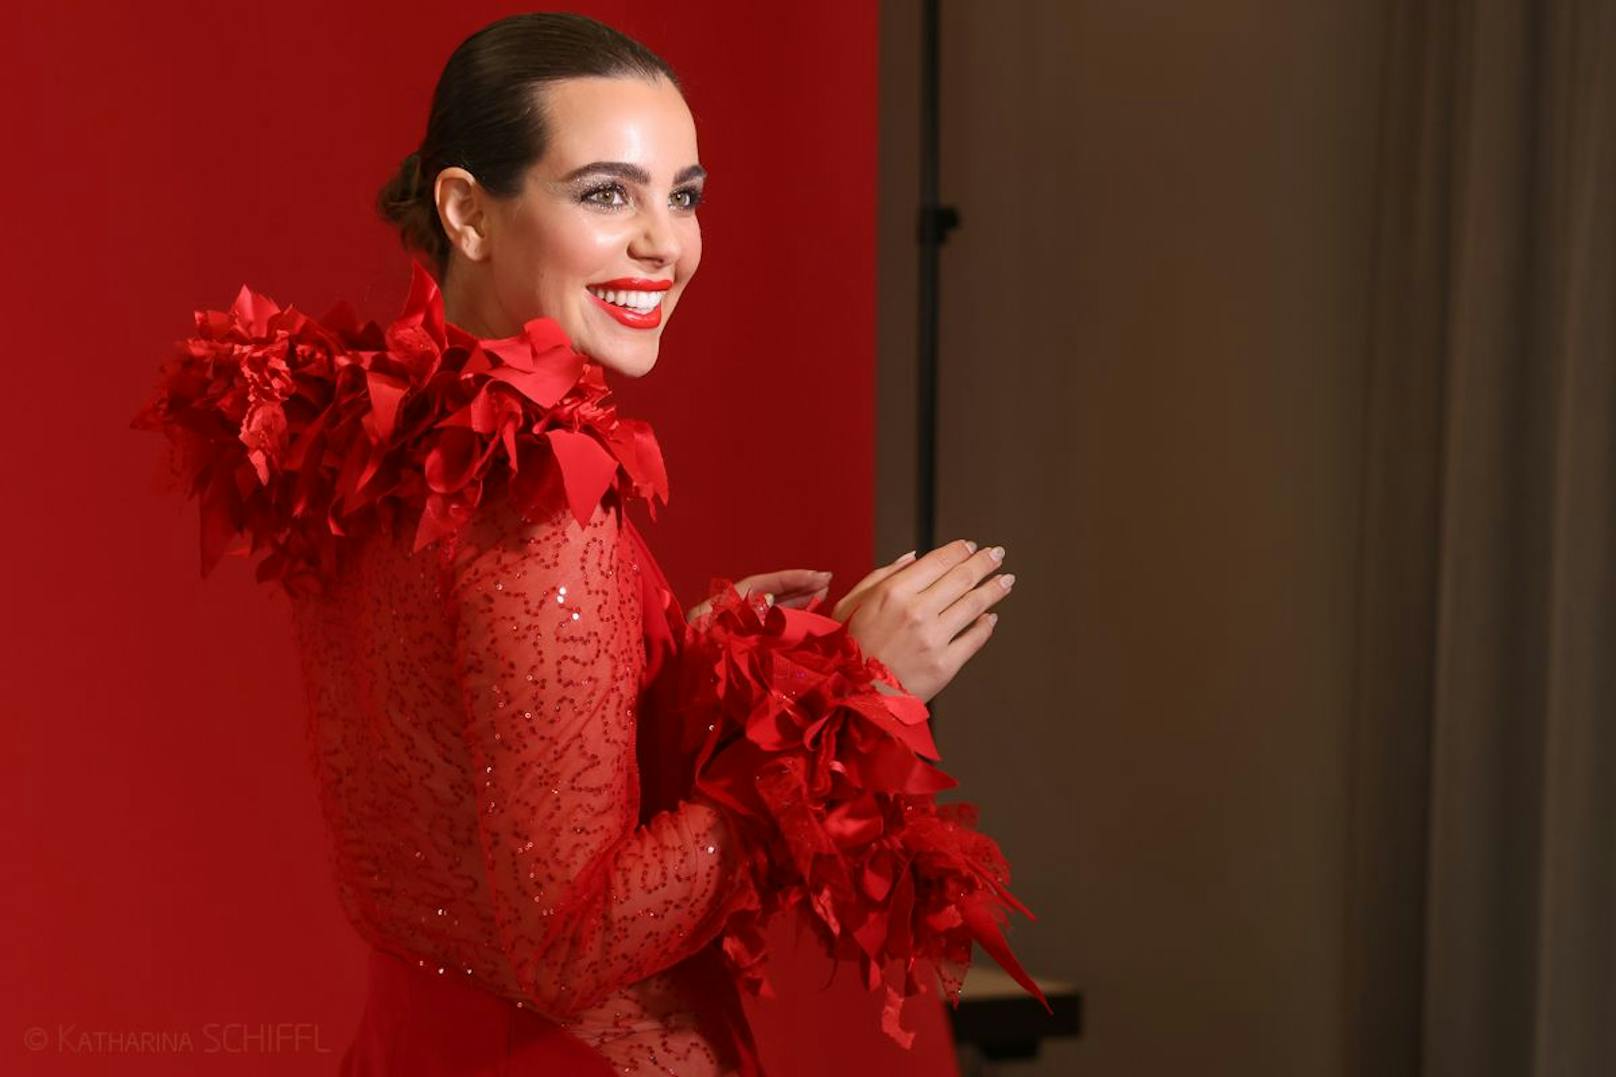 Nadine Mirada ist das neue Gesicht des Haute Couture Austria Award 2021